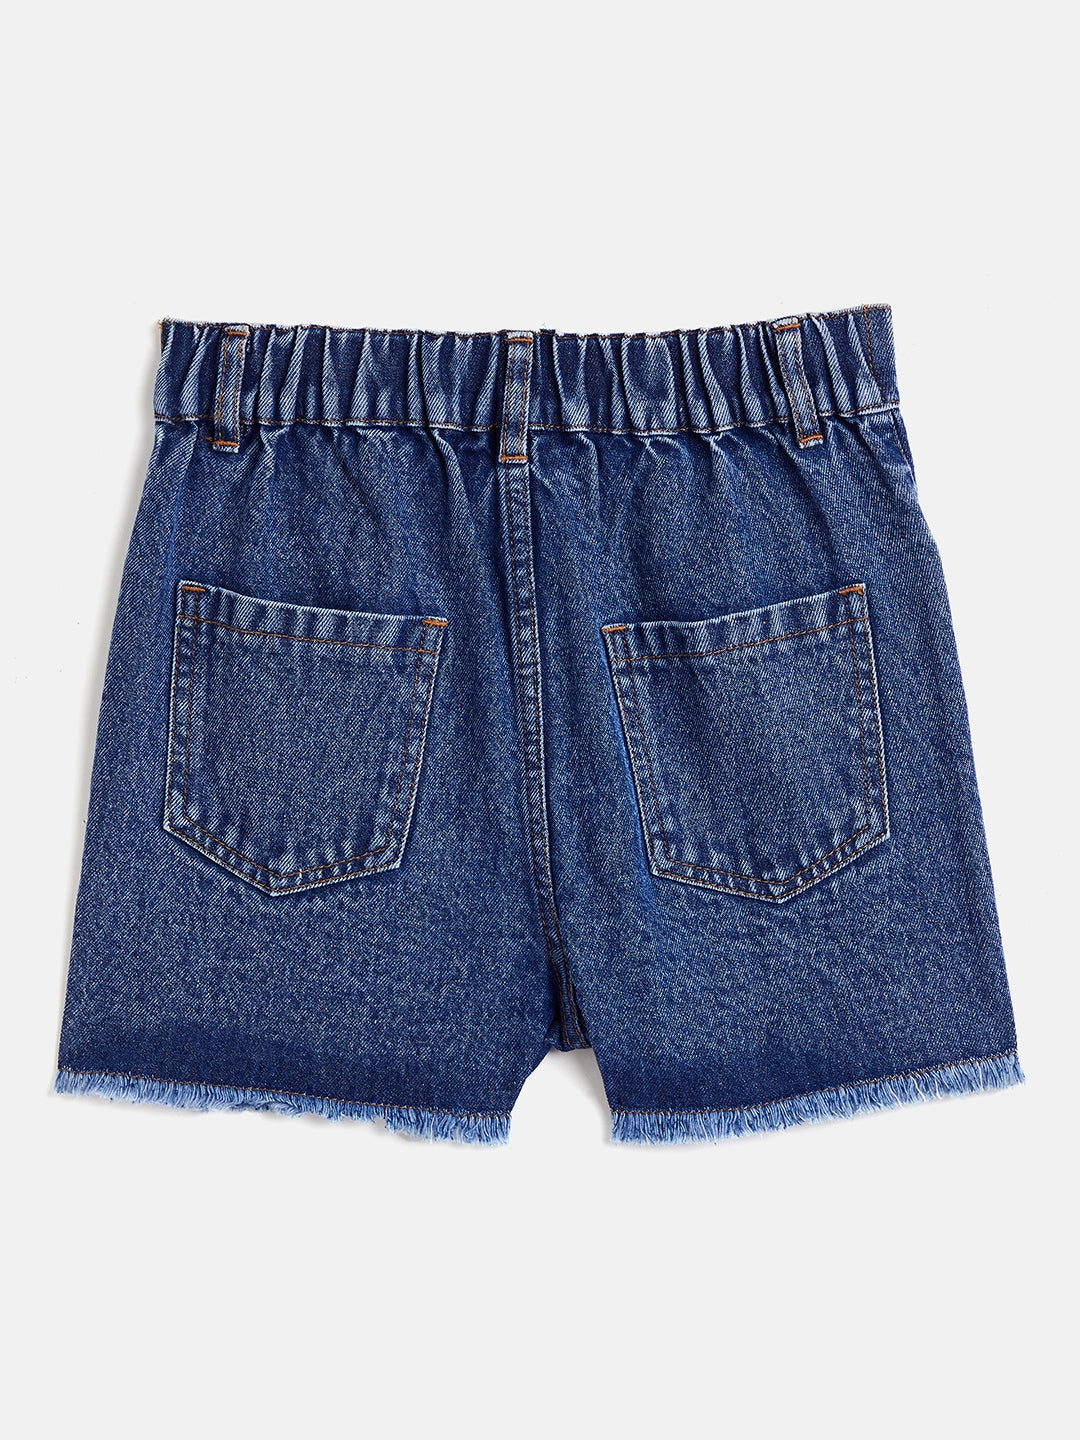 Feather Soft Denim shorts - Denim blue - Ladies | H&M IN